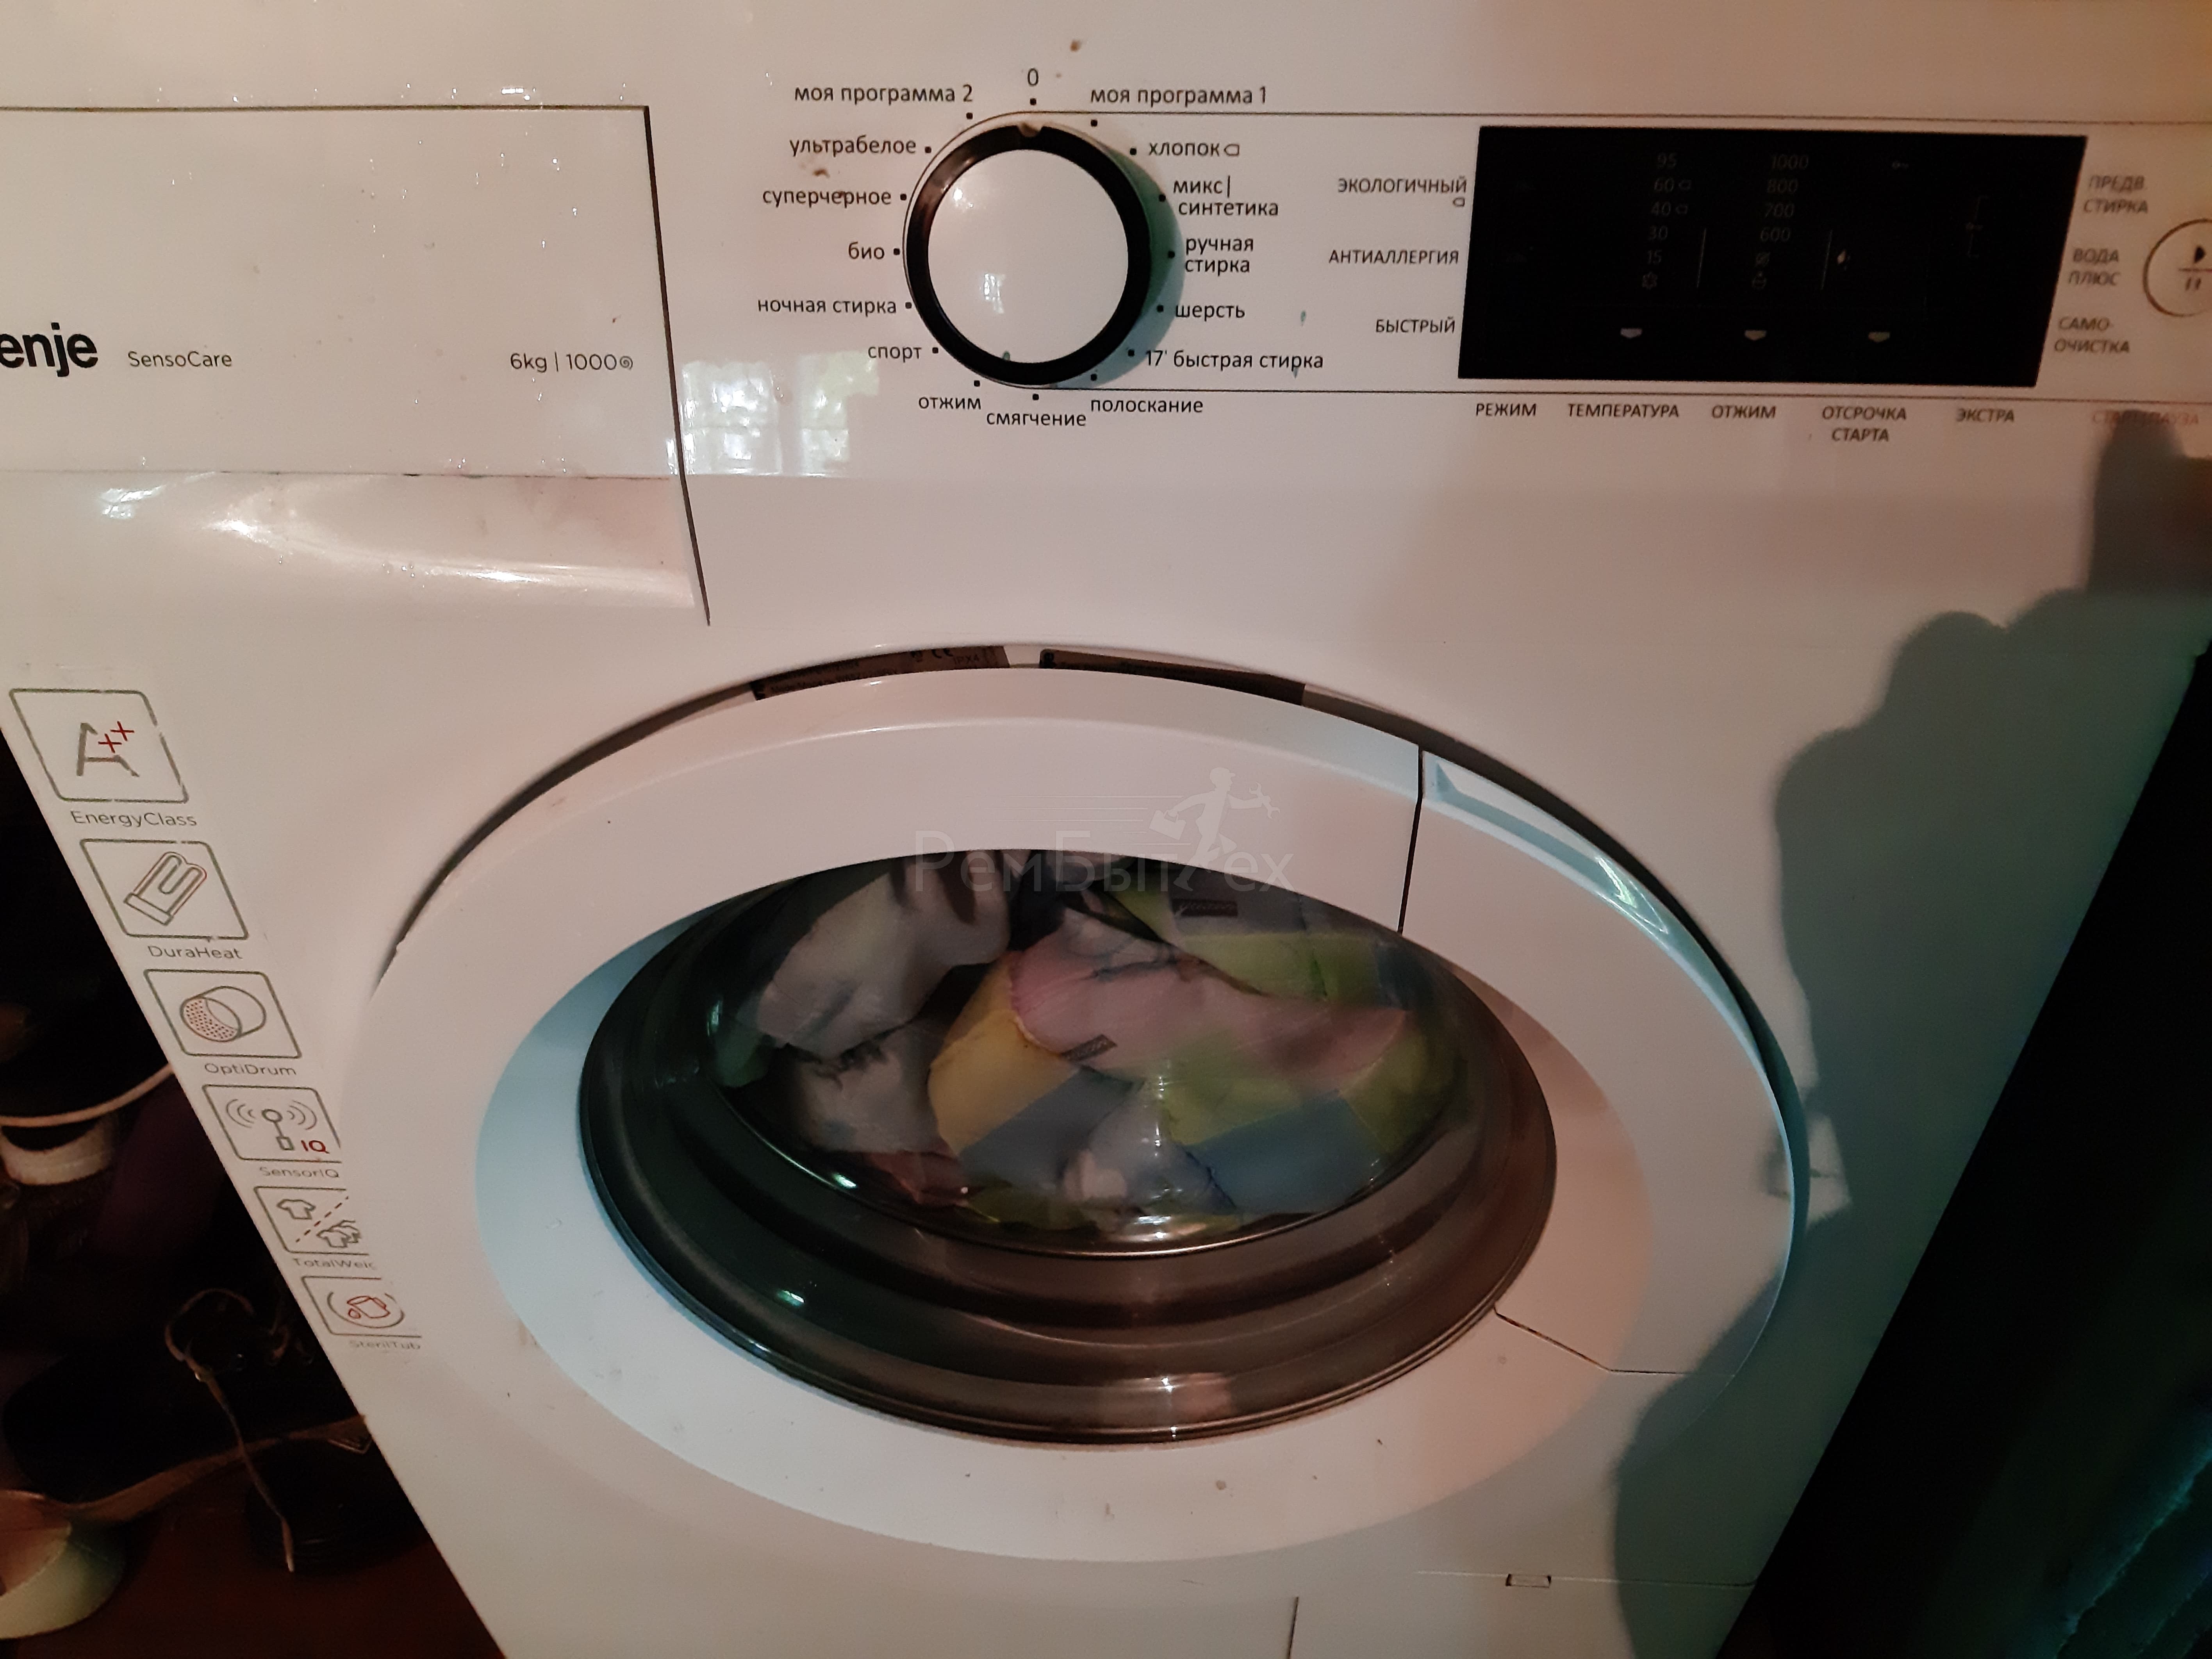 Gorenje стиральная машинка ошибка